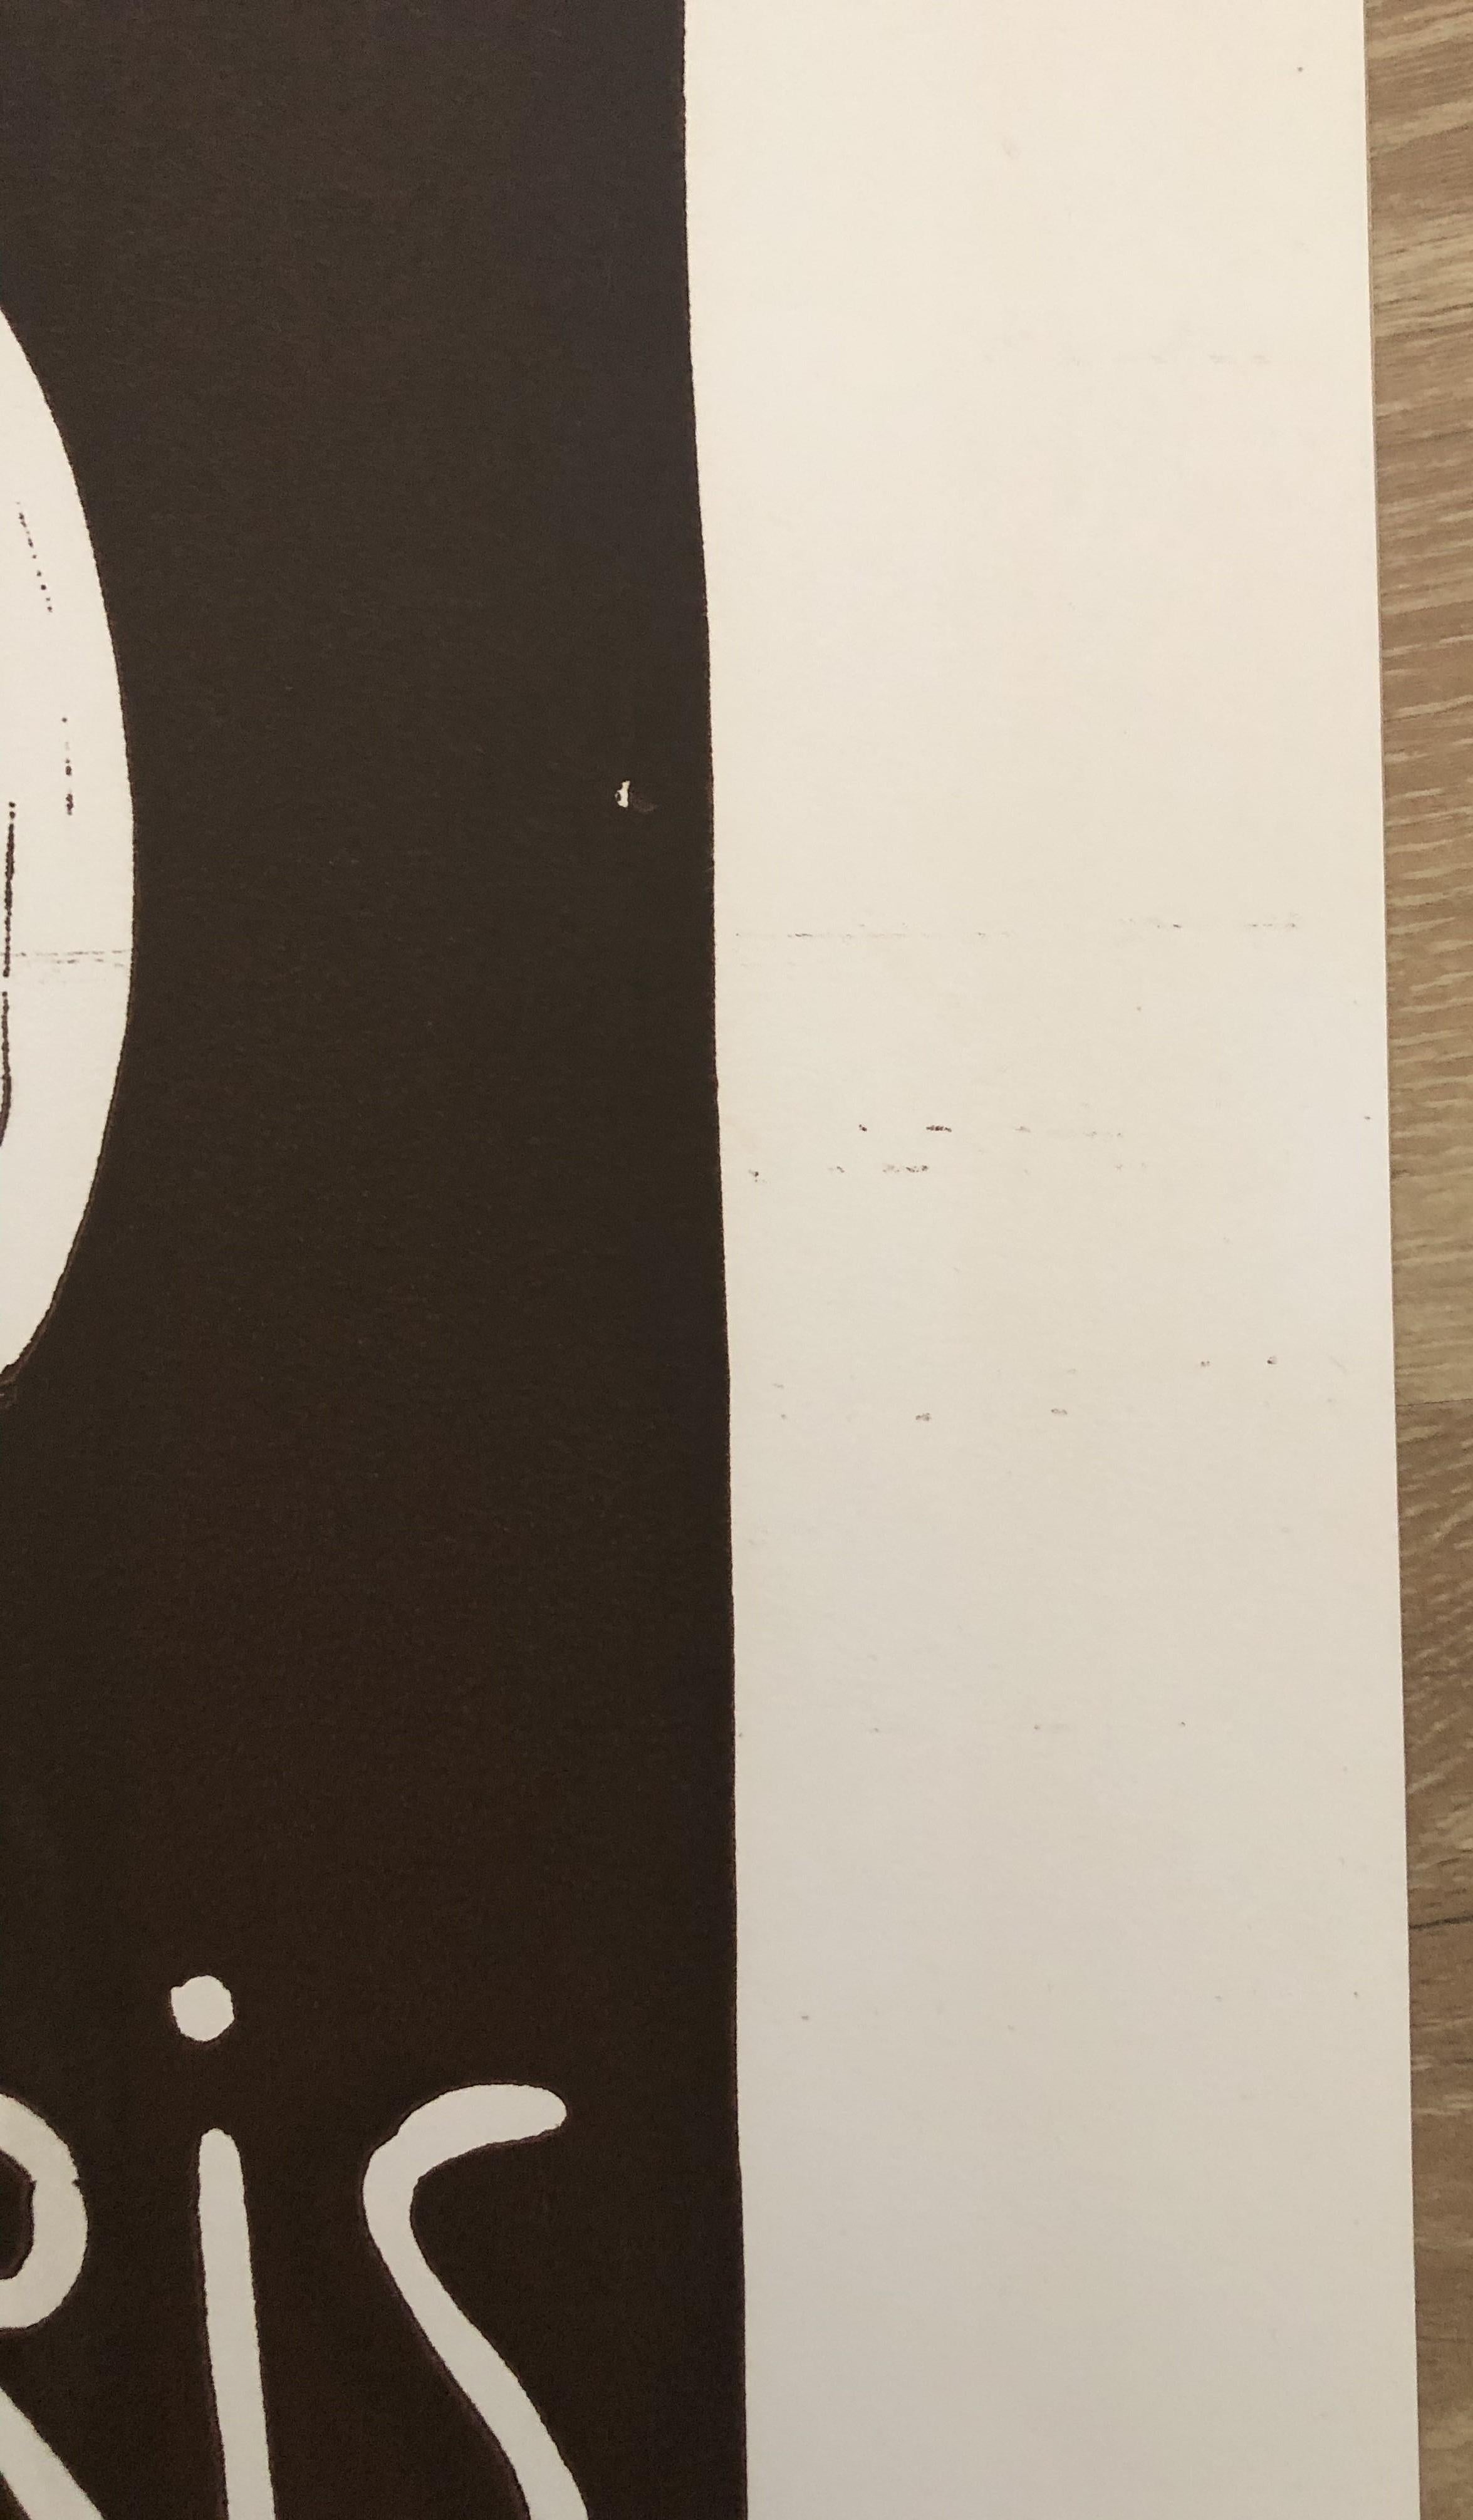 Pablo PICASSO
Lächelndes Gesicht für Madoura, 1958

Original-Linolschnitt  (gedruckt in der Werkstatt von Arnera)
Handsigniert mit rotem Bleistift
Aus einer limitierten Auflage von 200 unnummerierten Exemplaren
Auf Pergament 60 x 42 cm (ca. 23,6 x